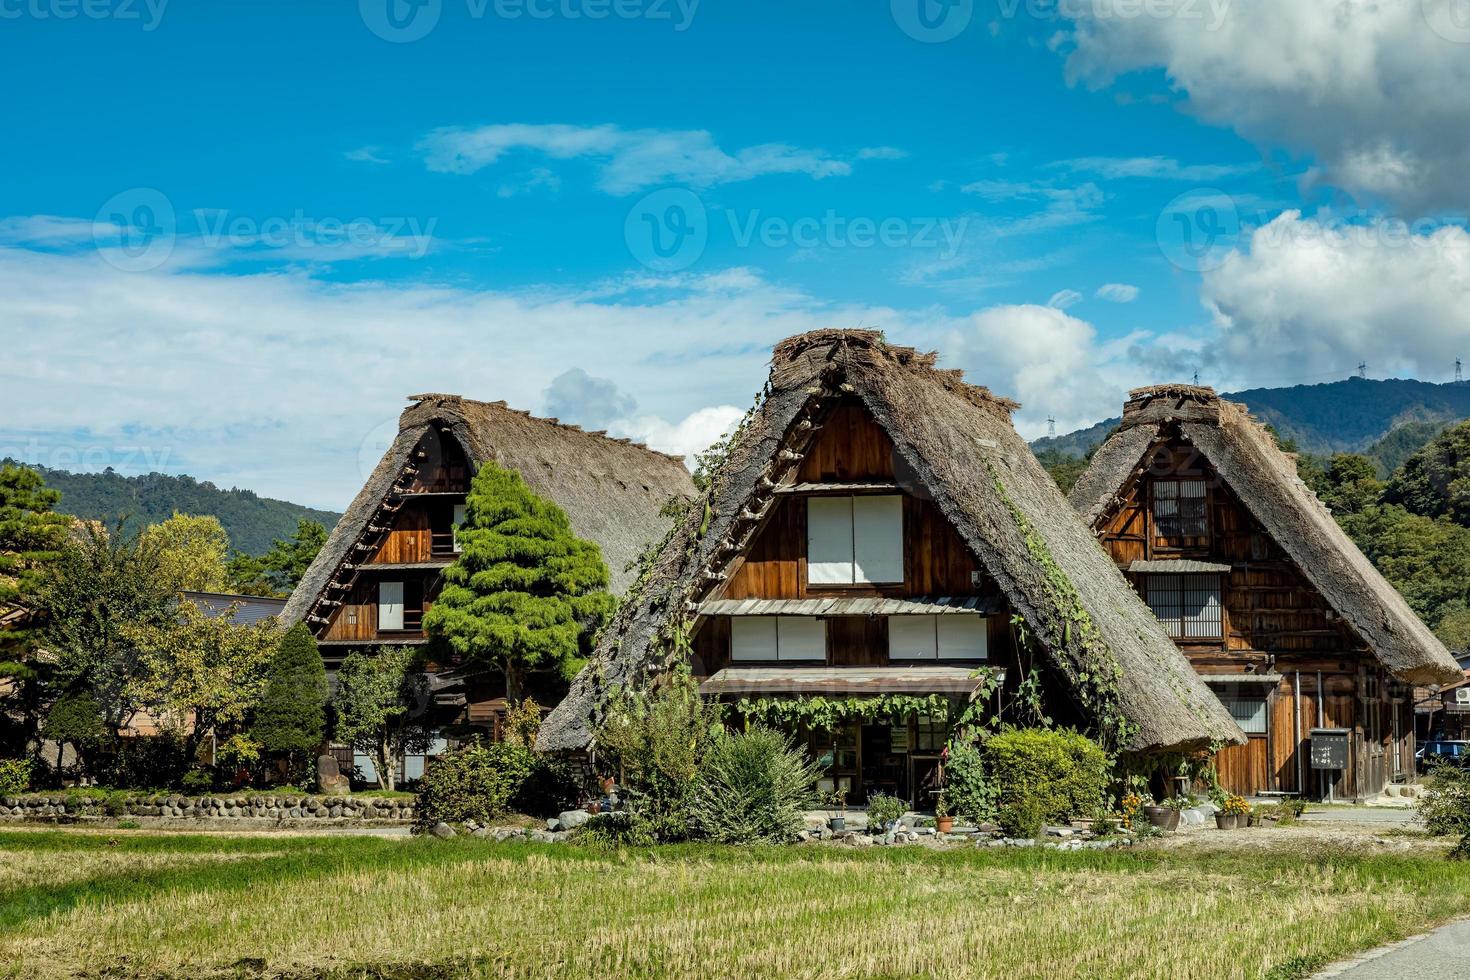 shirakawa pueblo japonés tradicional e histórico shirakawago en otoño. casa construida con madera con techo estilo gassho zukuri. shirakawa-go es patrimonio mundial de la unesco y el principal lugar emblemático de japón. foto